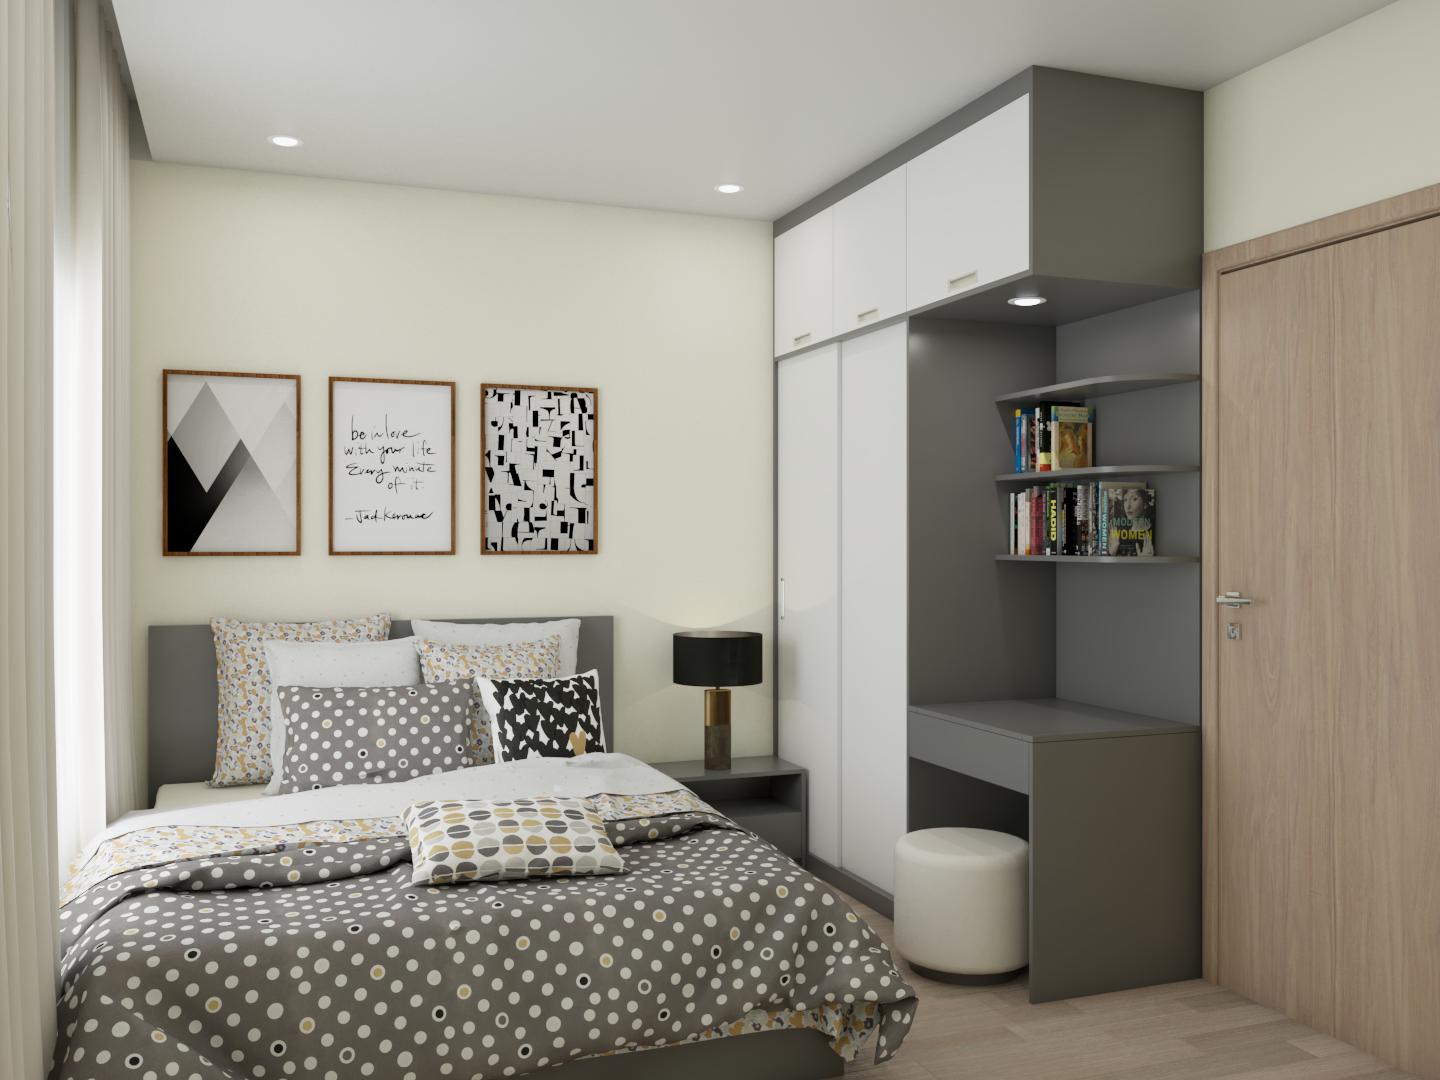 Những bộ phòng ngủ PN004 với kiểu dáng đơn giản, sang trọng cùng chất liệu cao cấp sẽ làm cho không gian phòng ngủ của bạn trở nên đẳng cấp và thật sự đáng mơ ước. Tận hưởng giấc ngủ thật sự tuyệt vời cùng với những bộ sản phẩm đẳng cấp này.